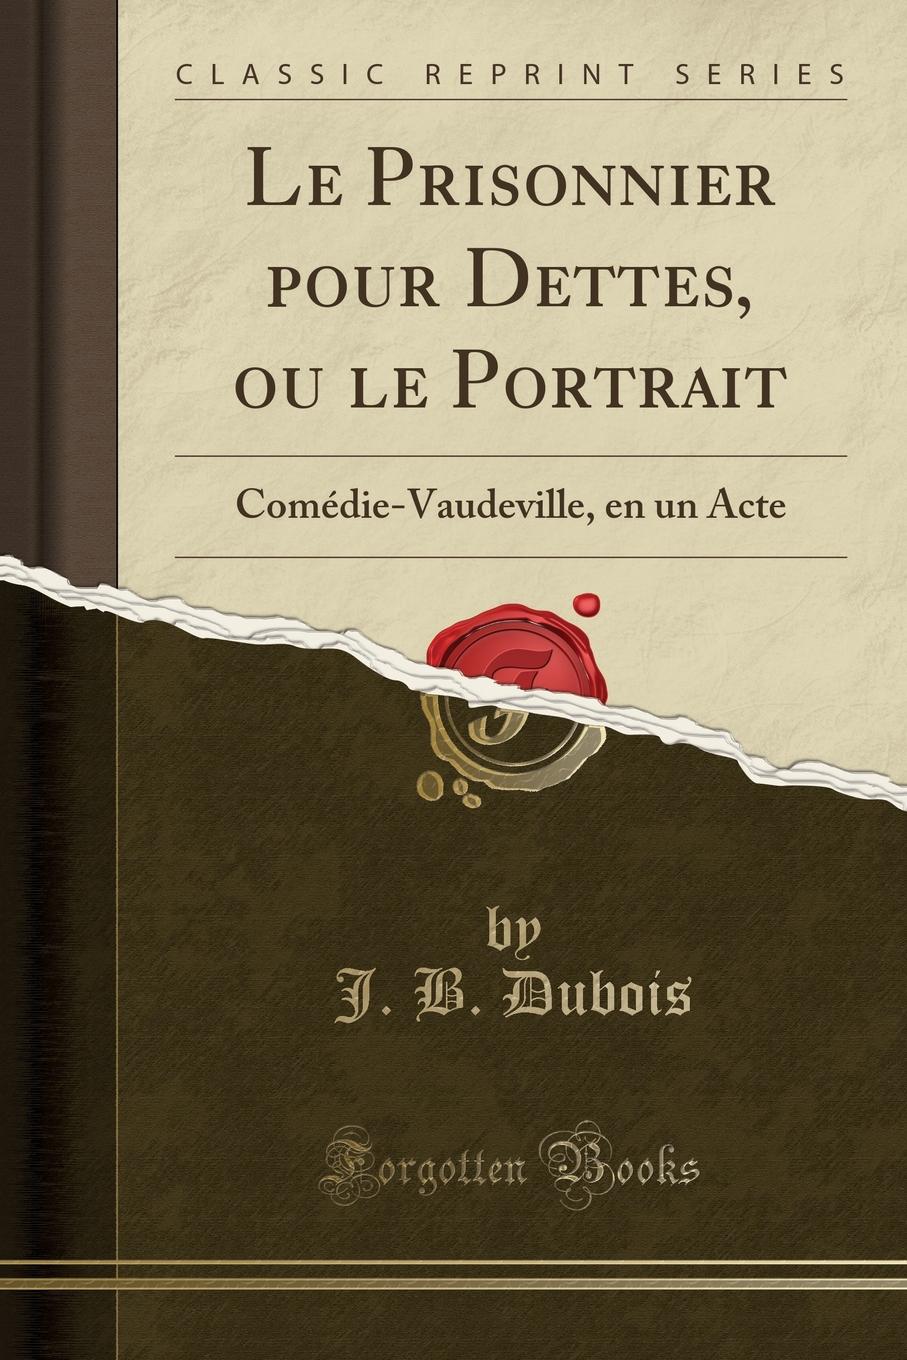 J. B. Dubois Le Prisonnier pour Dettes, ou le Portrait. Comedie-Vaudeville, en un Acte (Classic Reprint)